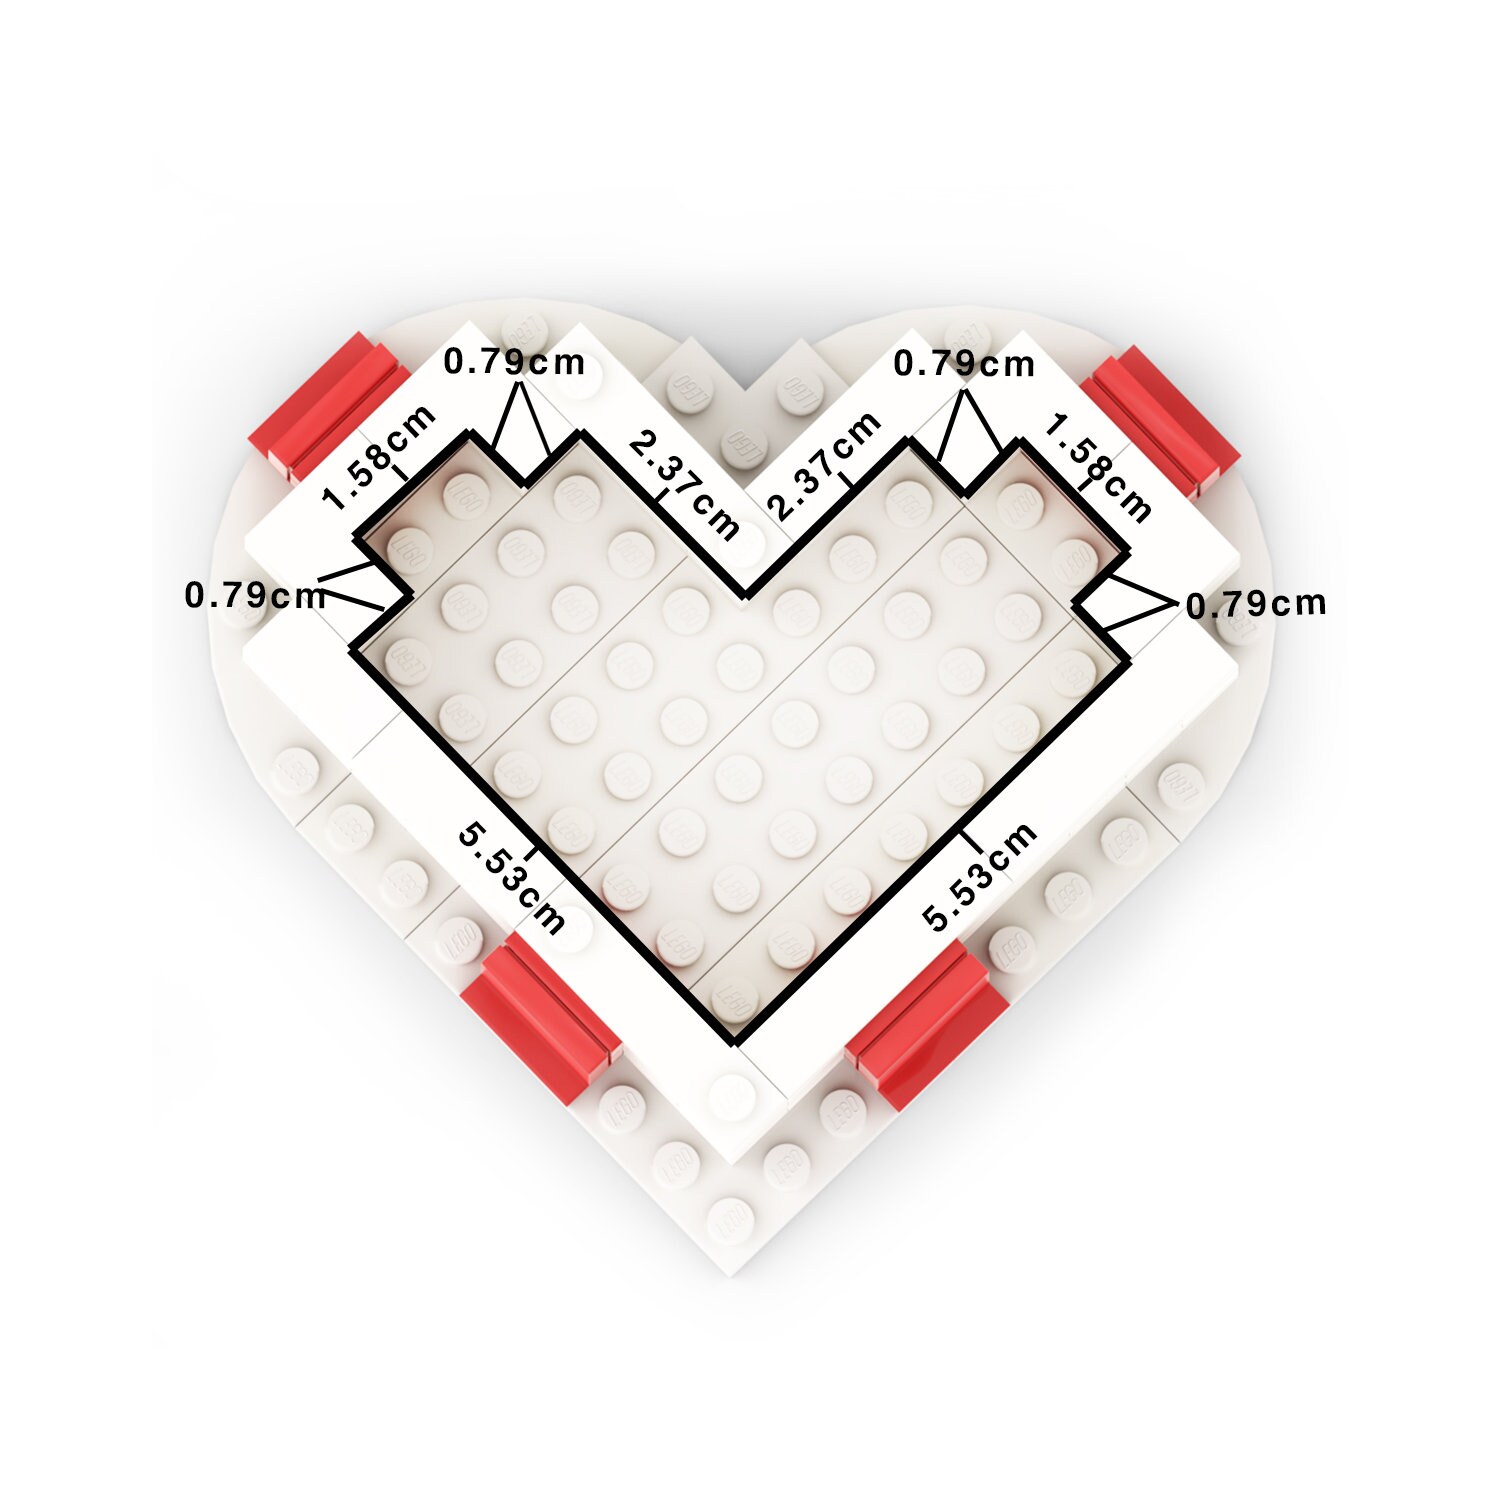 Rotes Herz Samt scharte Vorschlag Ring-Geschenk-Box für Verlobung Hochzeit MG3 